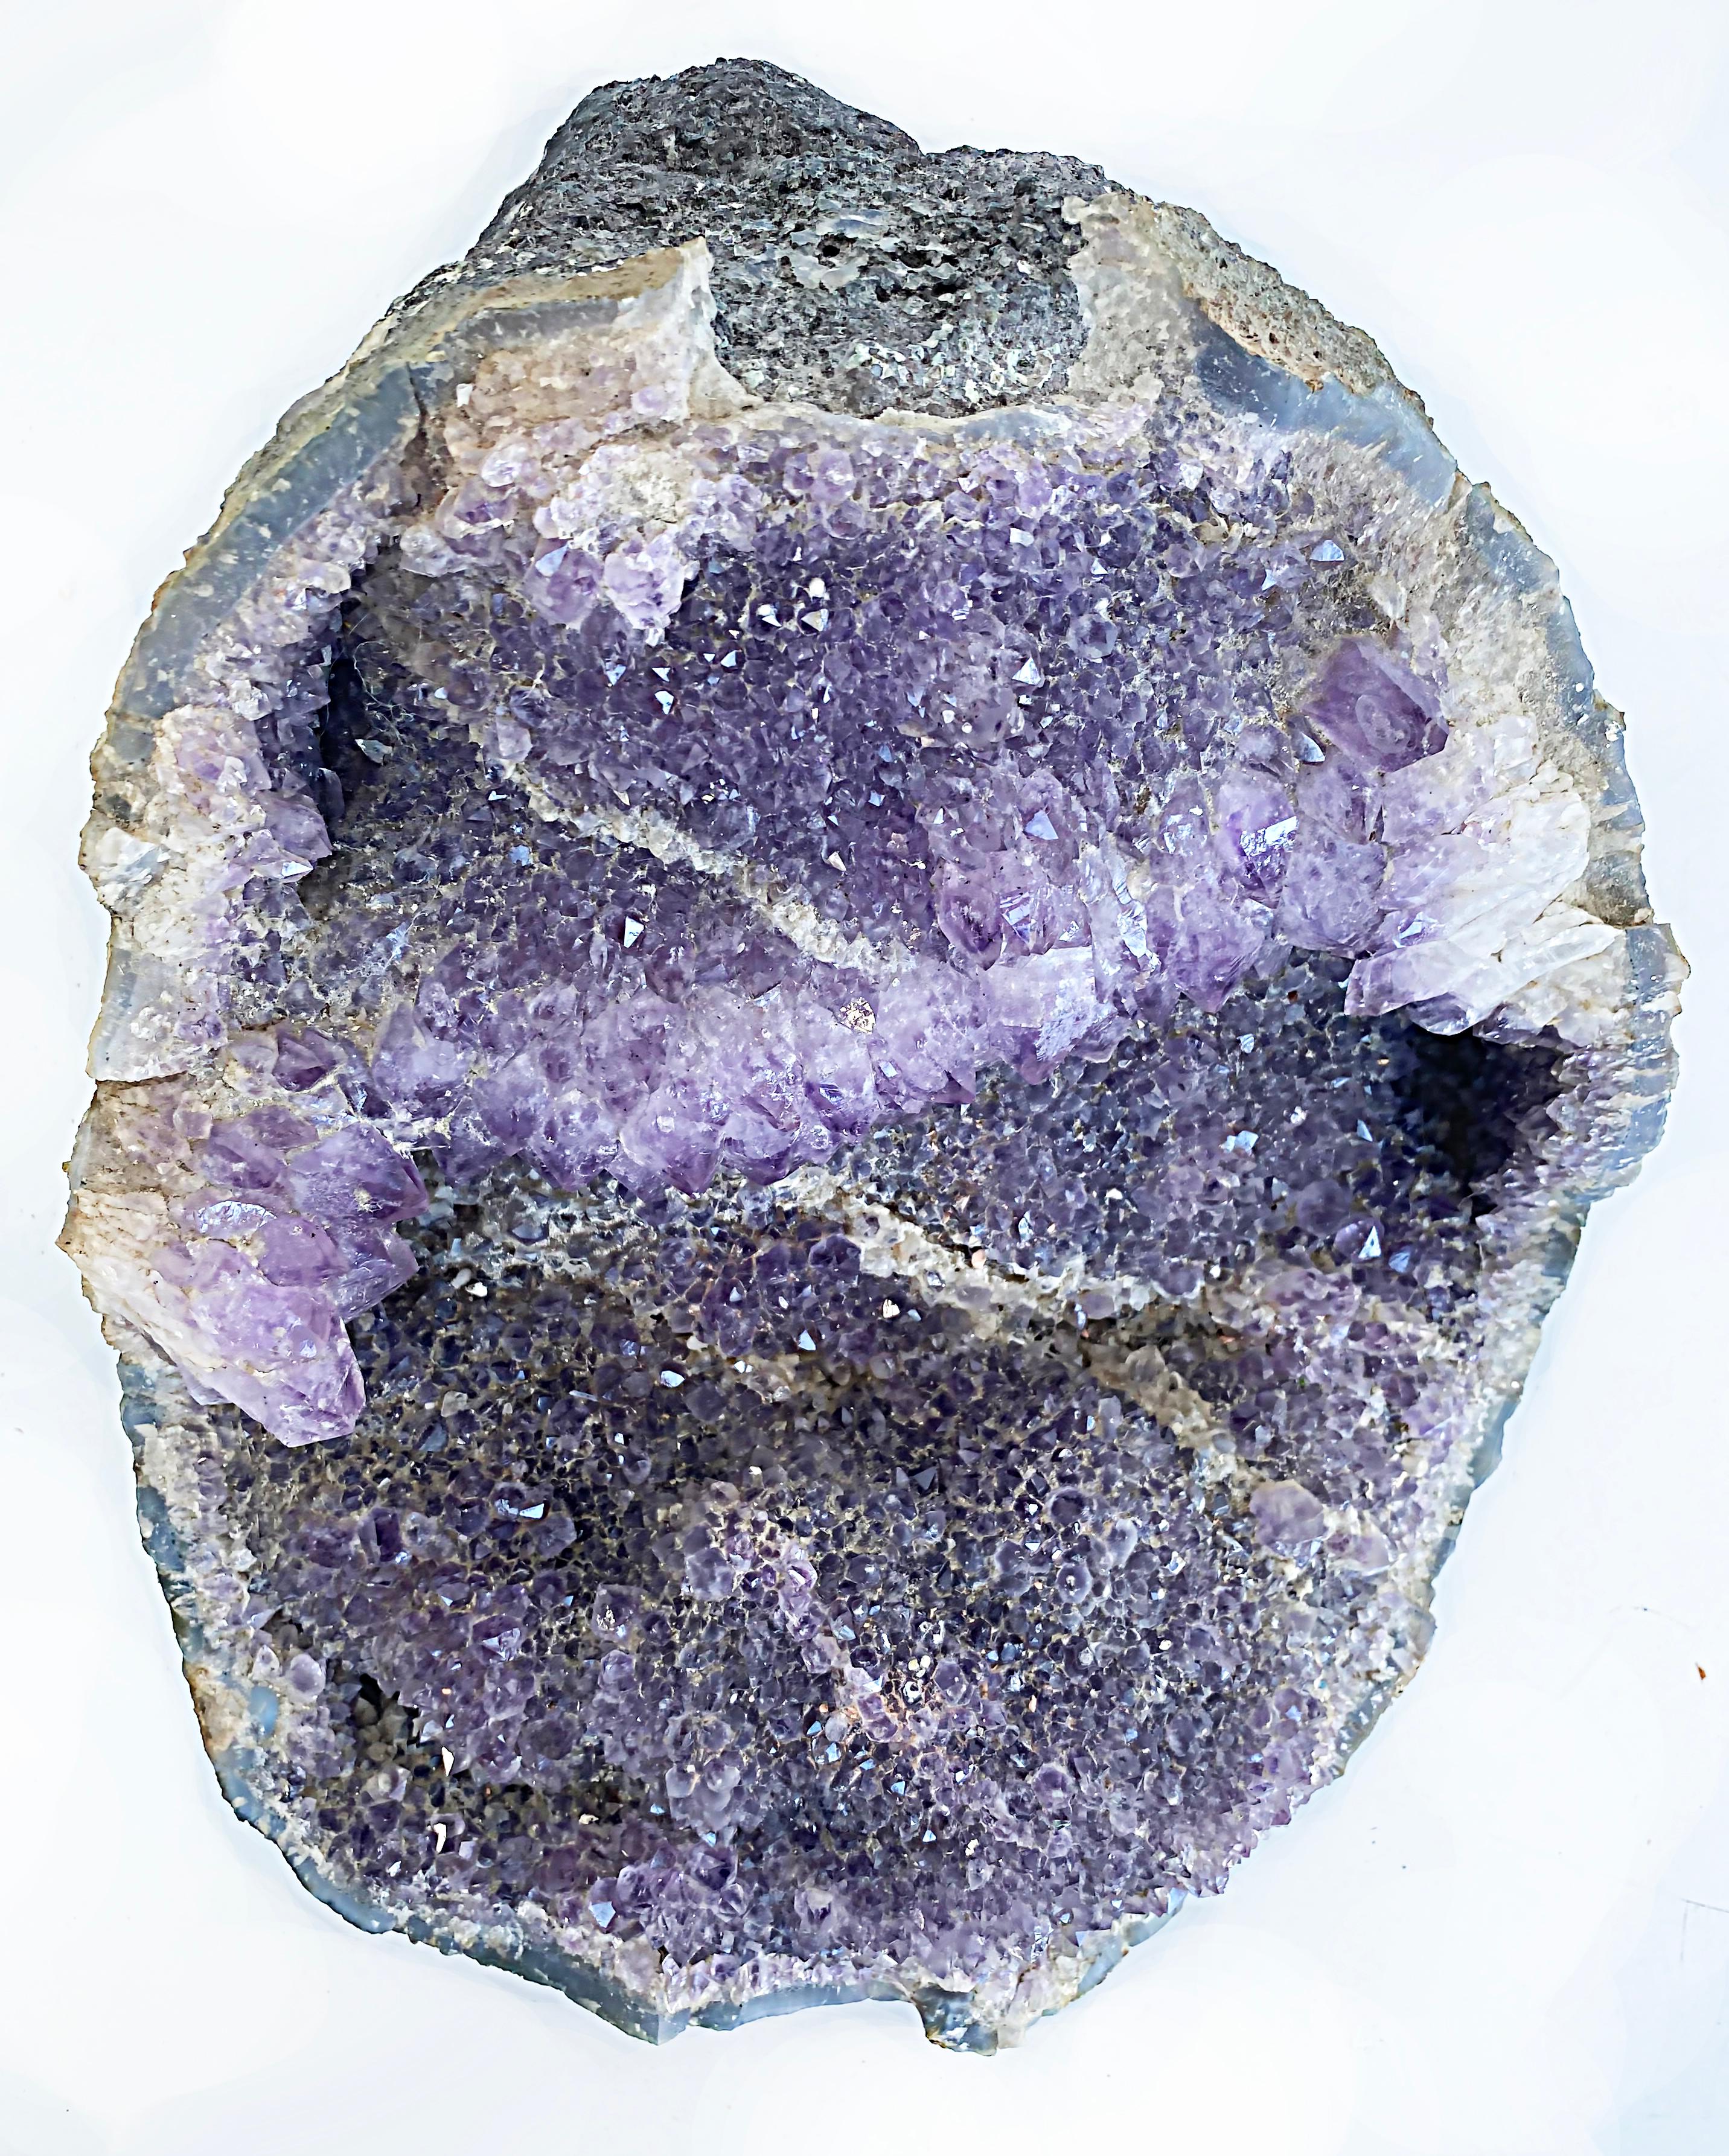 Organic Modern Large Amethyst Quartz Crystal Geode Mineral Specimen Cluster